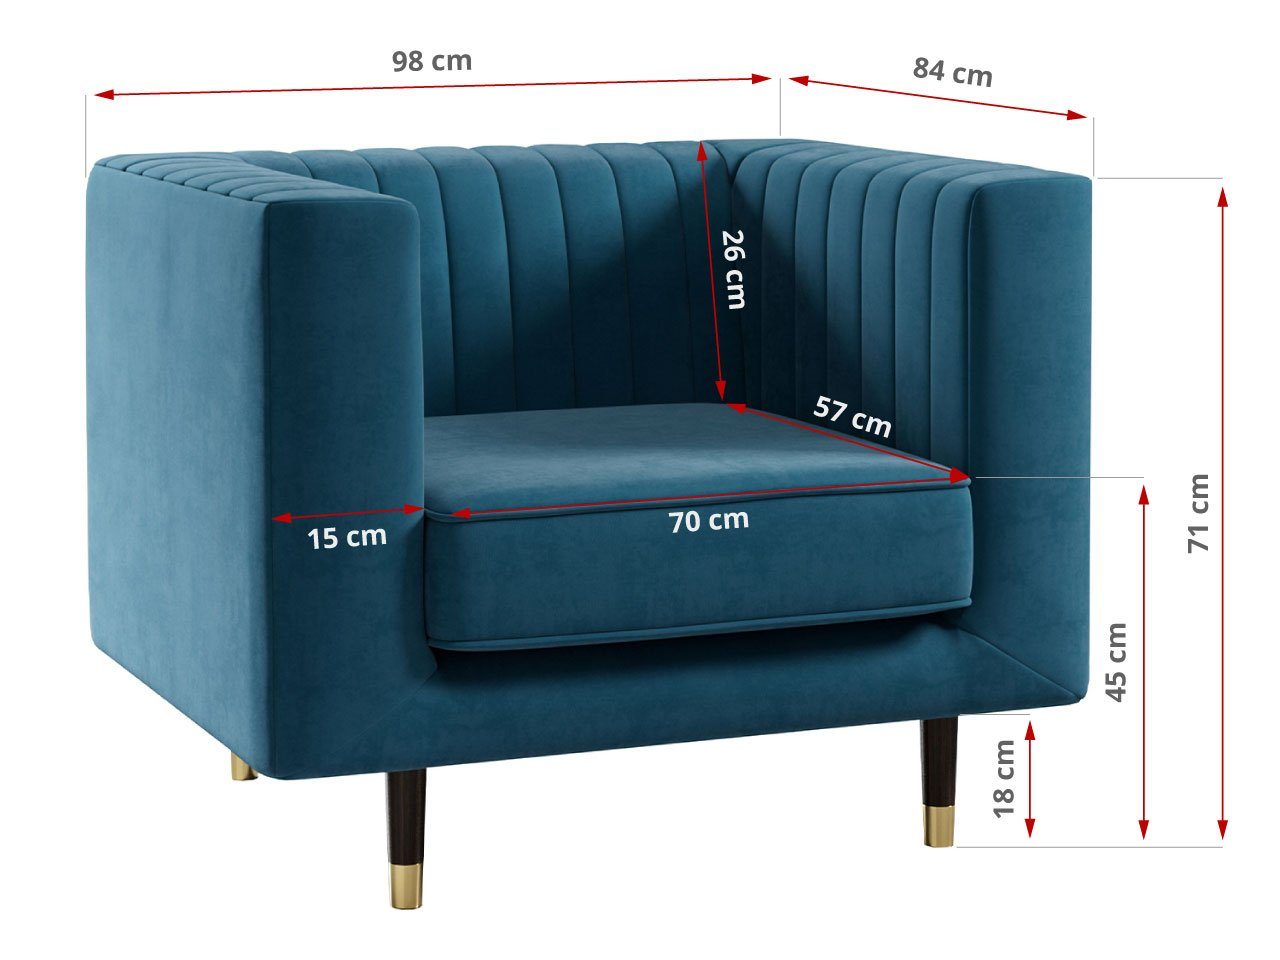 MÖBEL Möbelset Kronos Blau im Beinen, mit ELMO Loungemöbel 2 Sofa modischen MKS hohen Stil, 3 1,